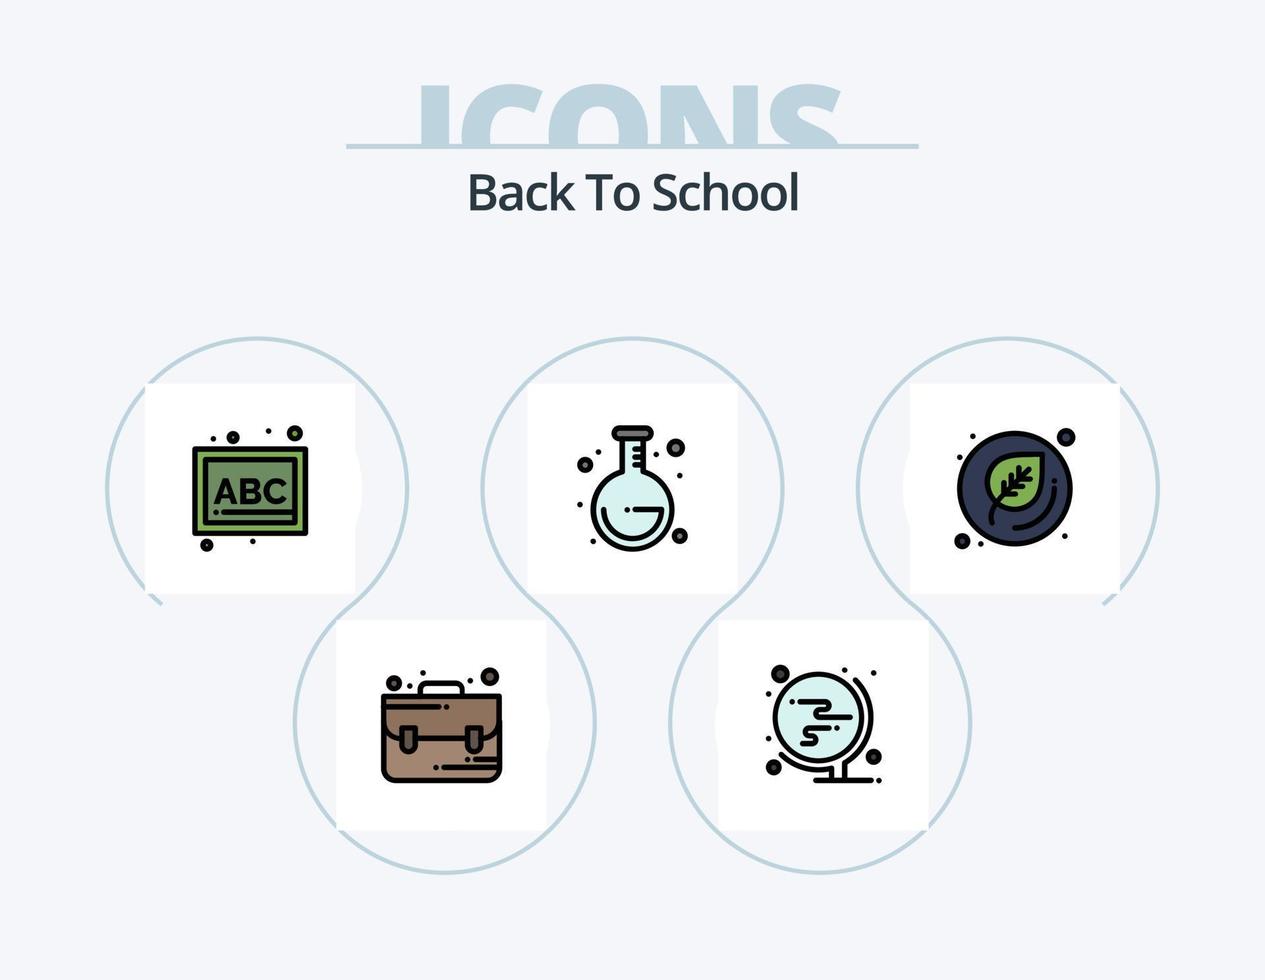 línea de regreso a la escuela paquete de iconos llenos 5 diseño de iconos. lápiz. gobernante. mundo. educación. hoja vector